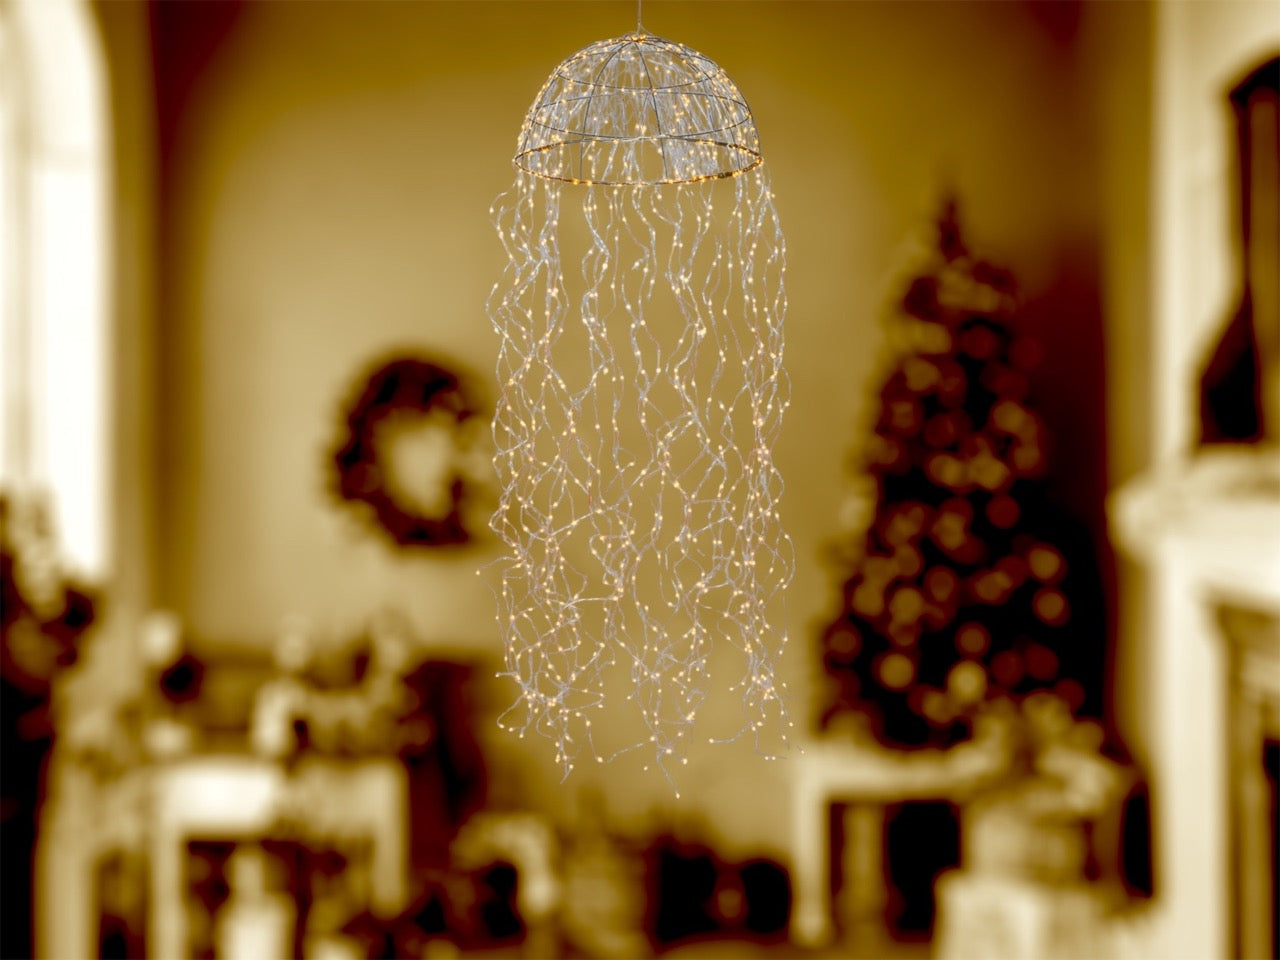 kroonluchter of kwallamp hangend met 720 ledlampjes aan metaaldraadjes  en een lengte van 160cm en diameter van 45cm  gepresenteerd in een kerstsfeer